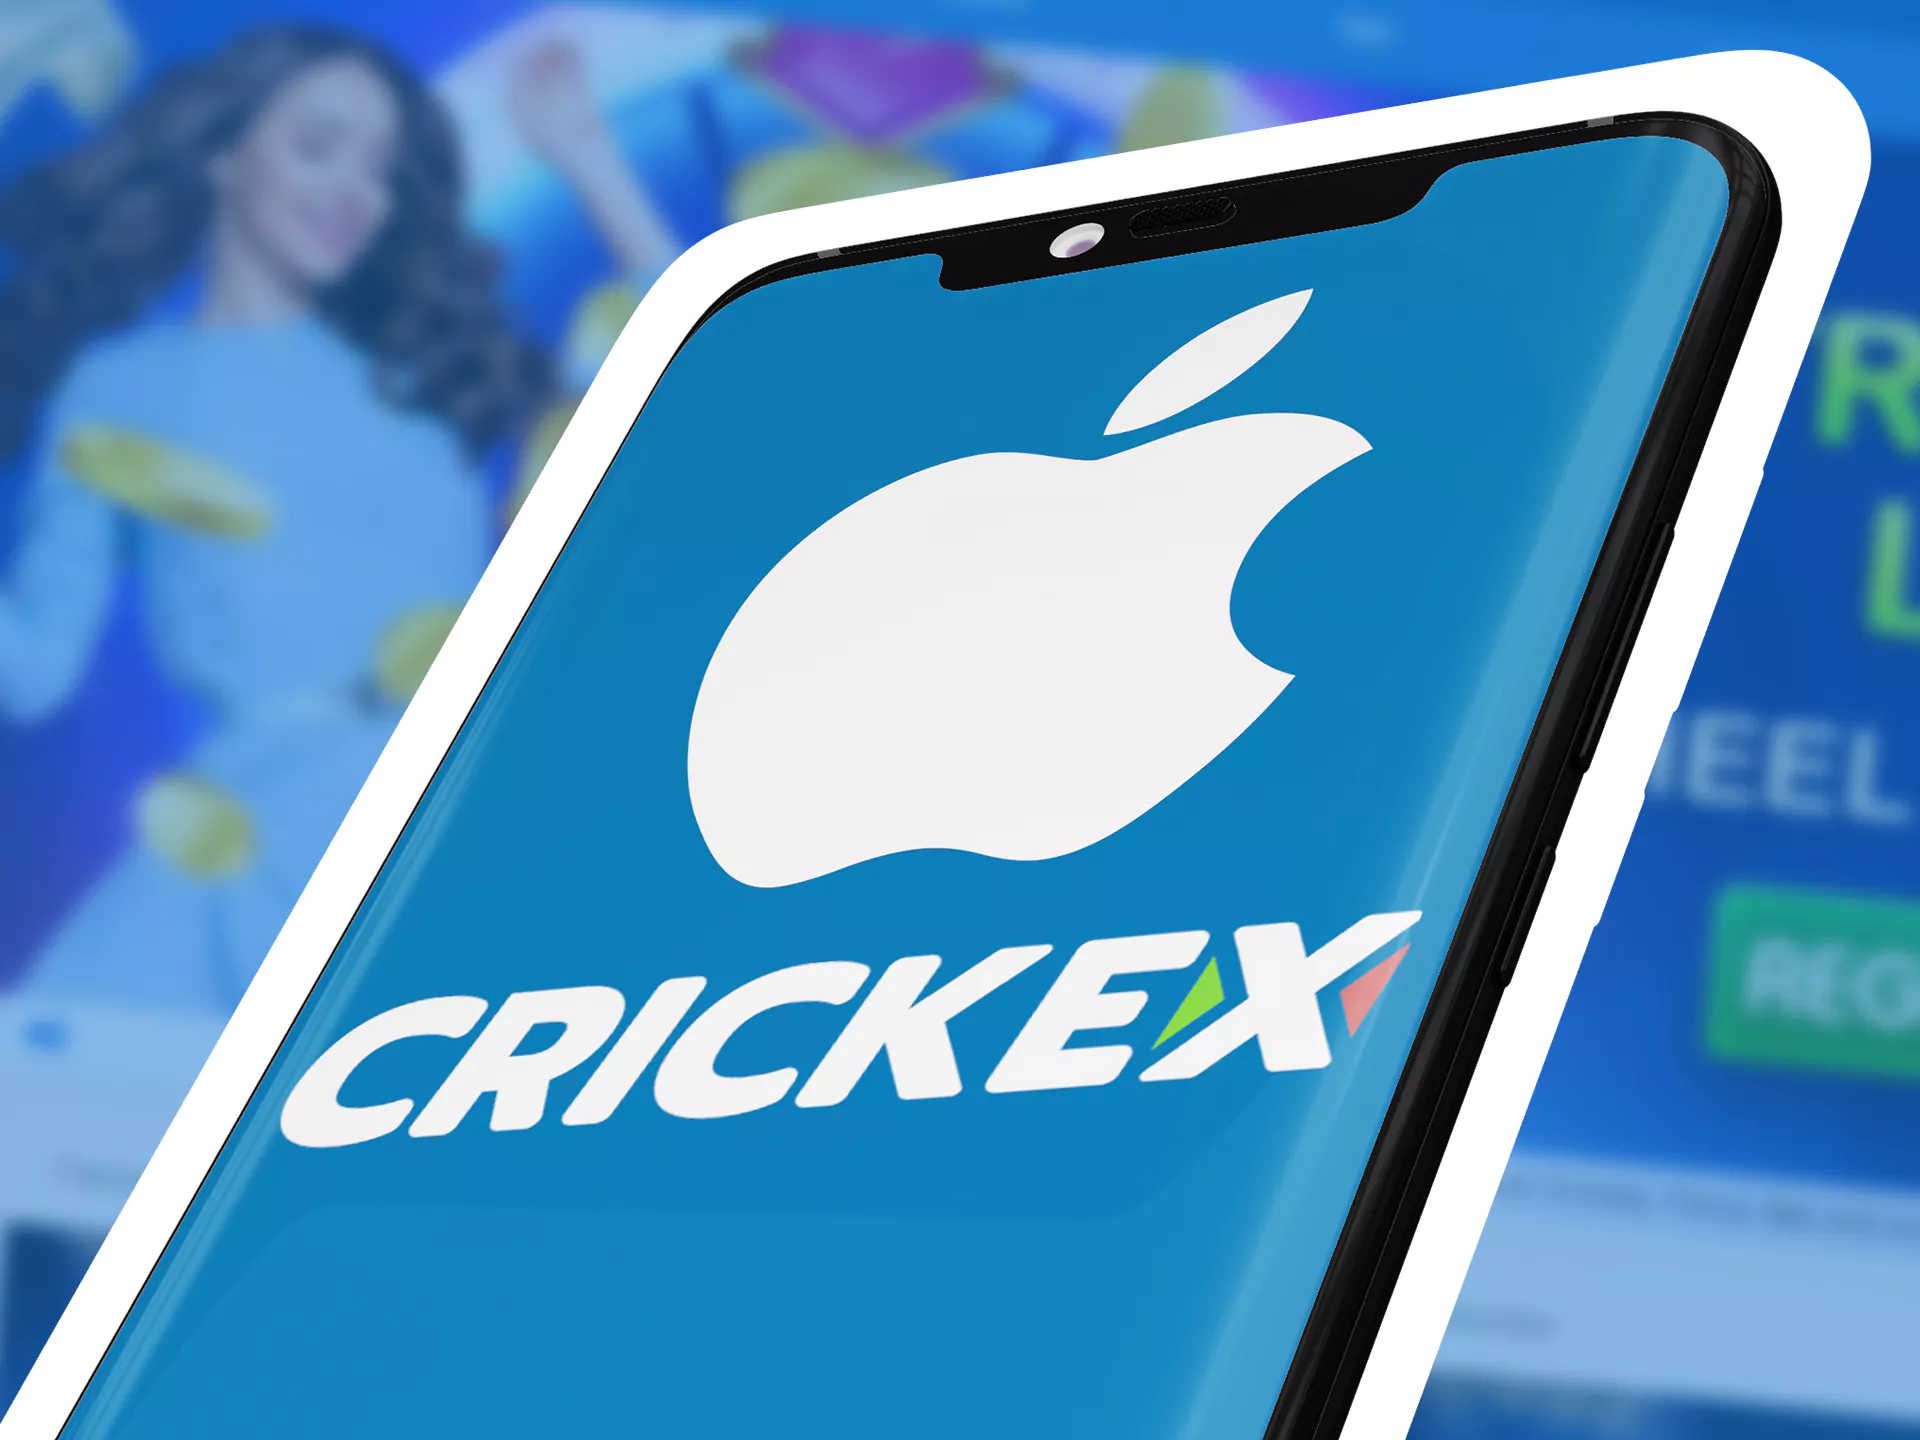 Install Crickex app on your iOS phone.